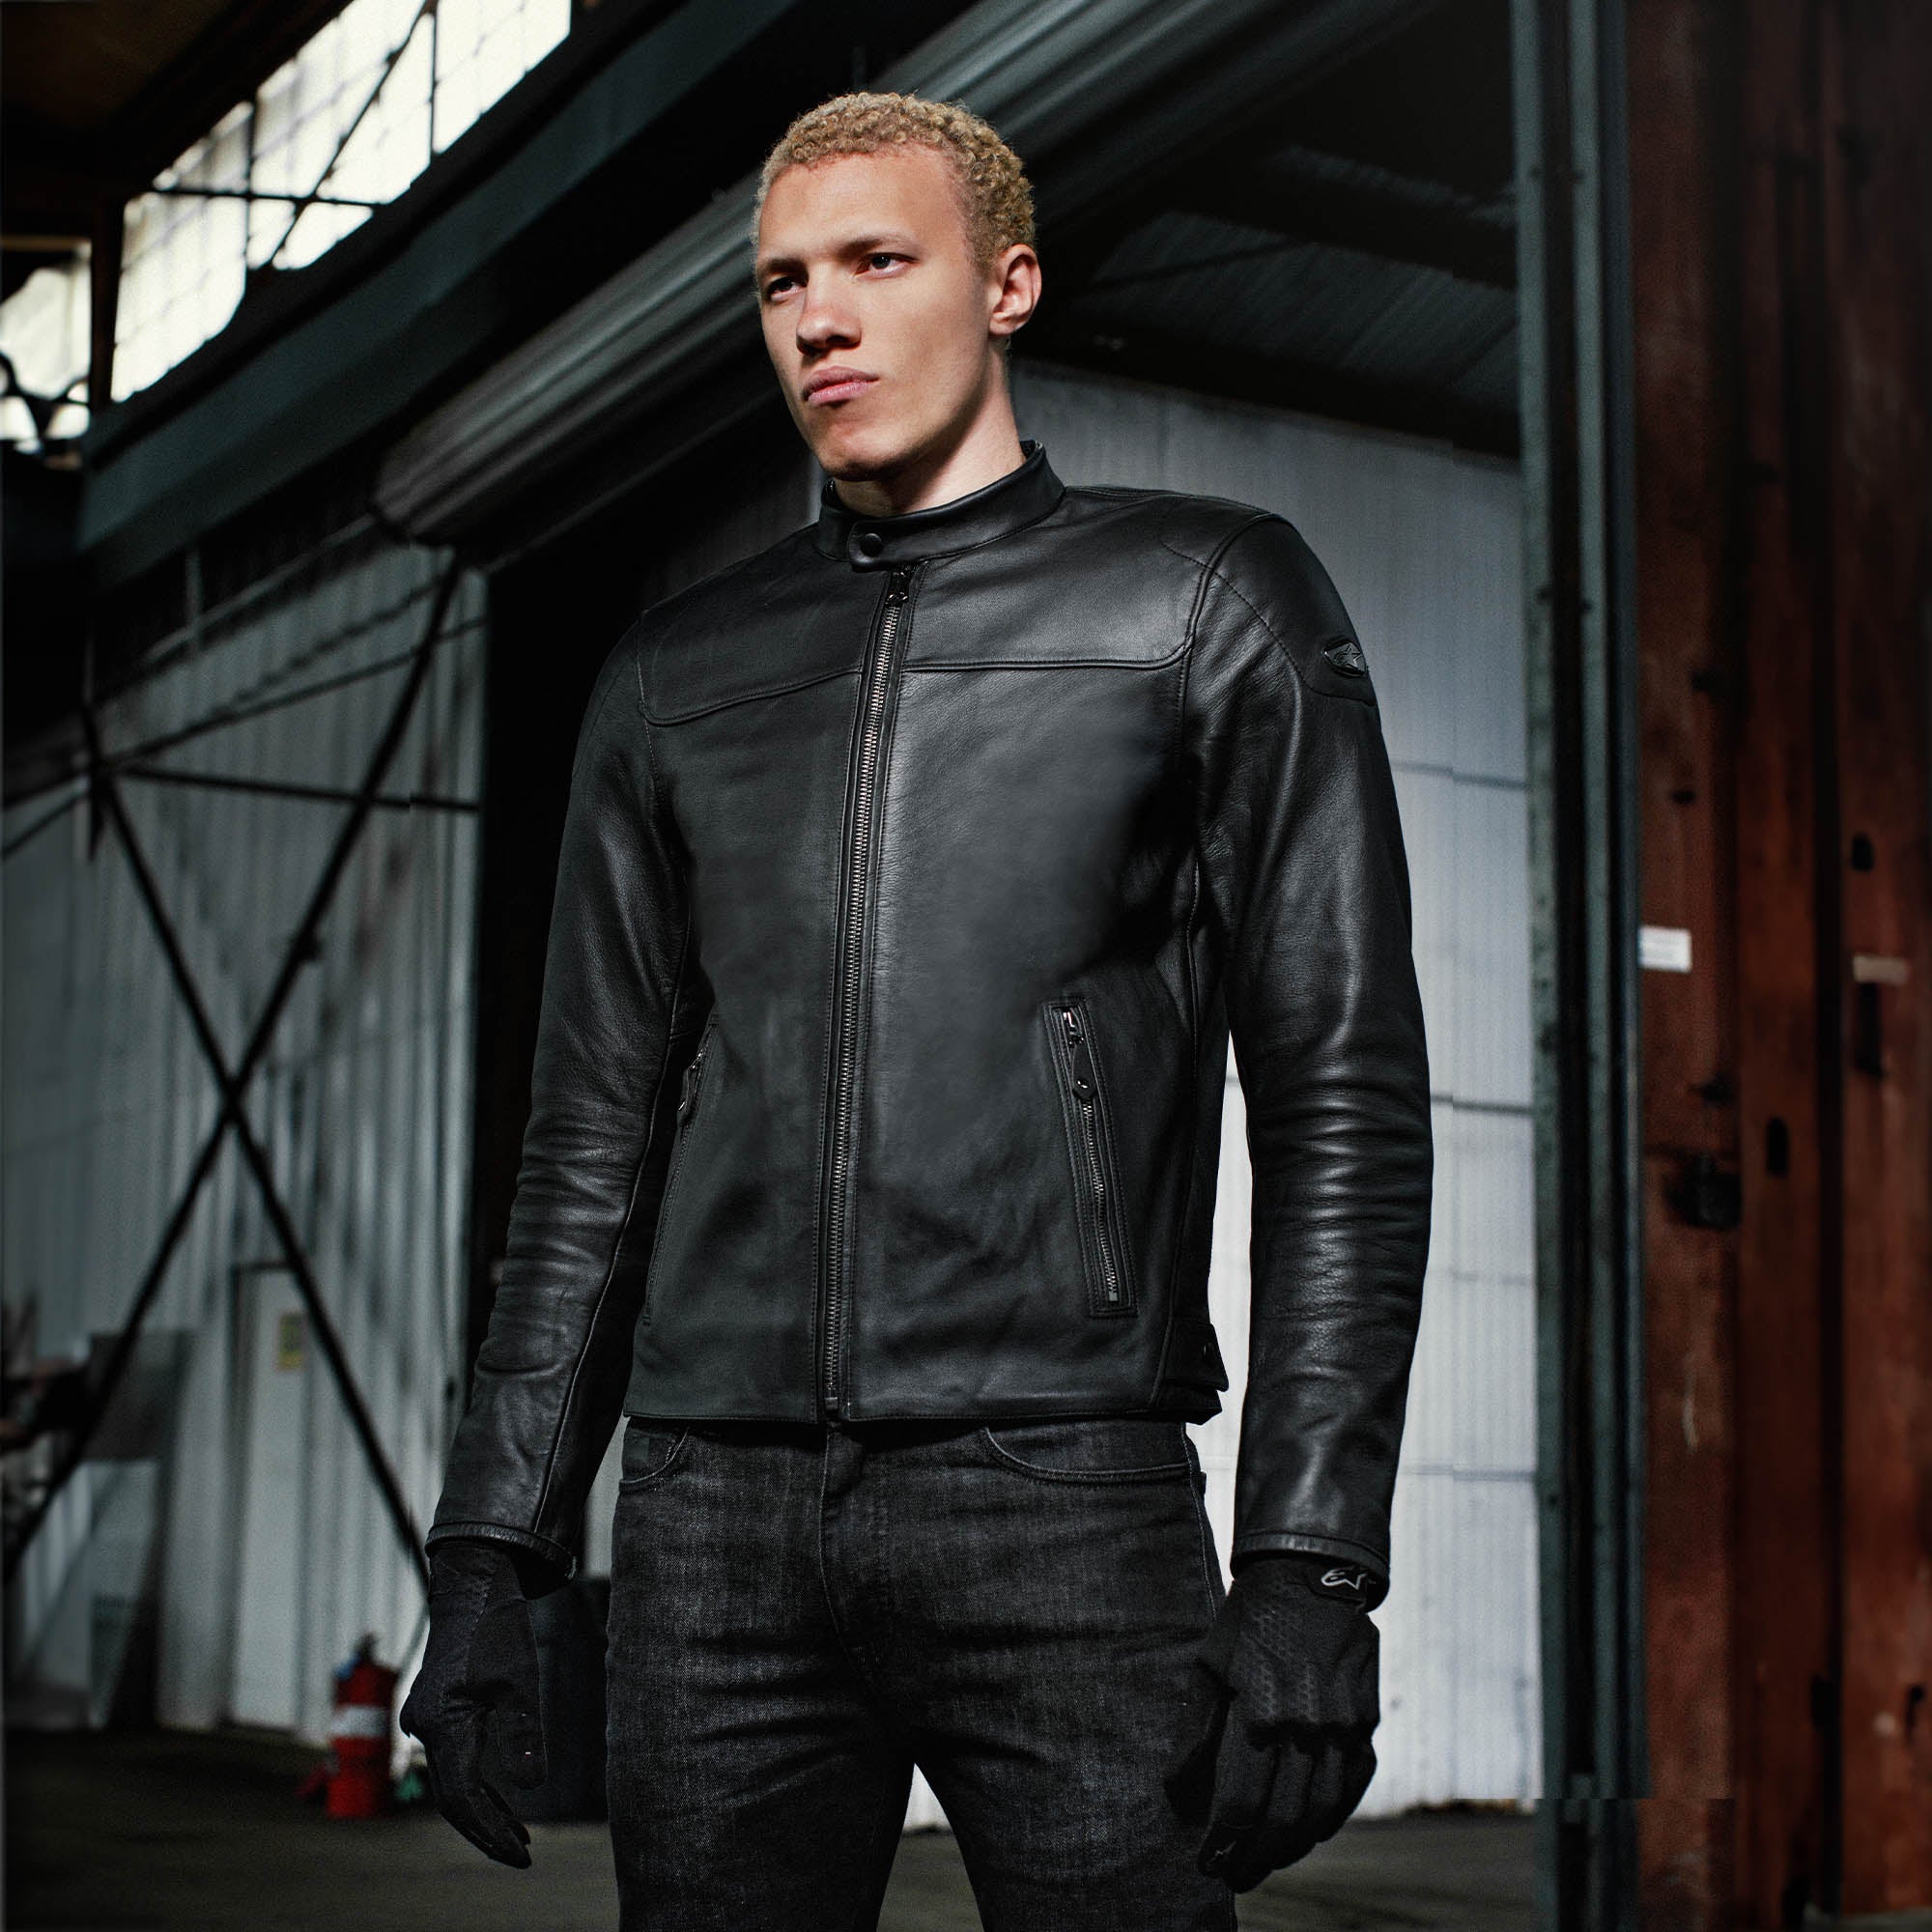 Edward Urban Leather Jacket – CW Leather